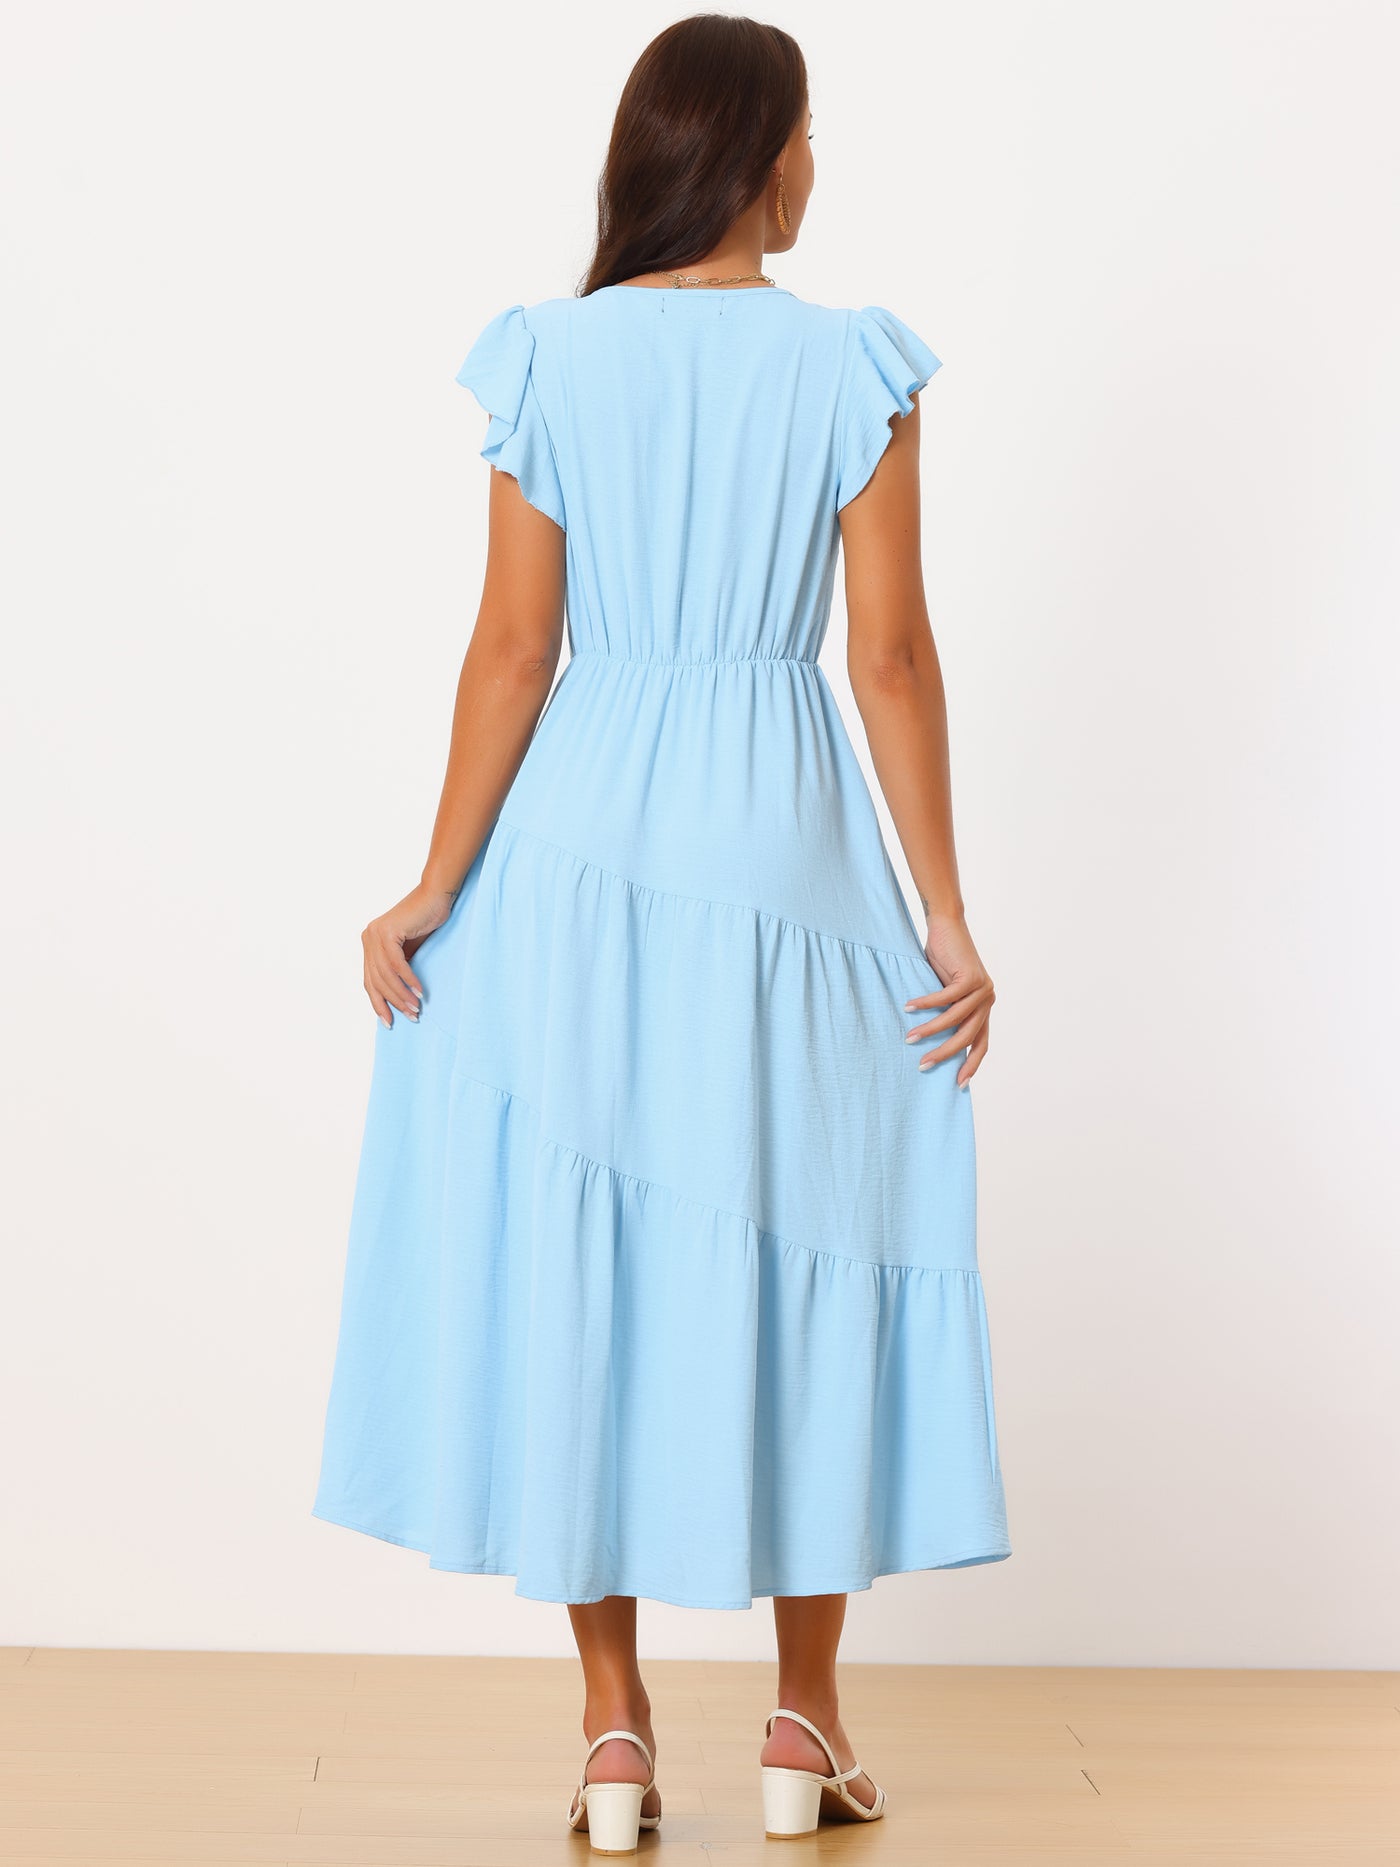 Bublédon Women's Flutter Short Sleeve Tiered Maxi Dresses V Neck Elastic Waist Ruffle a Line Long Dress